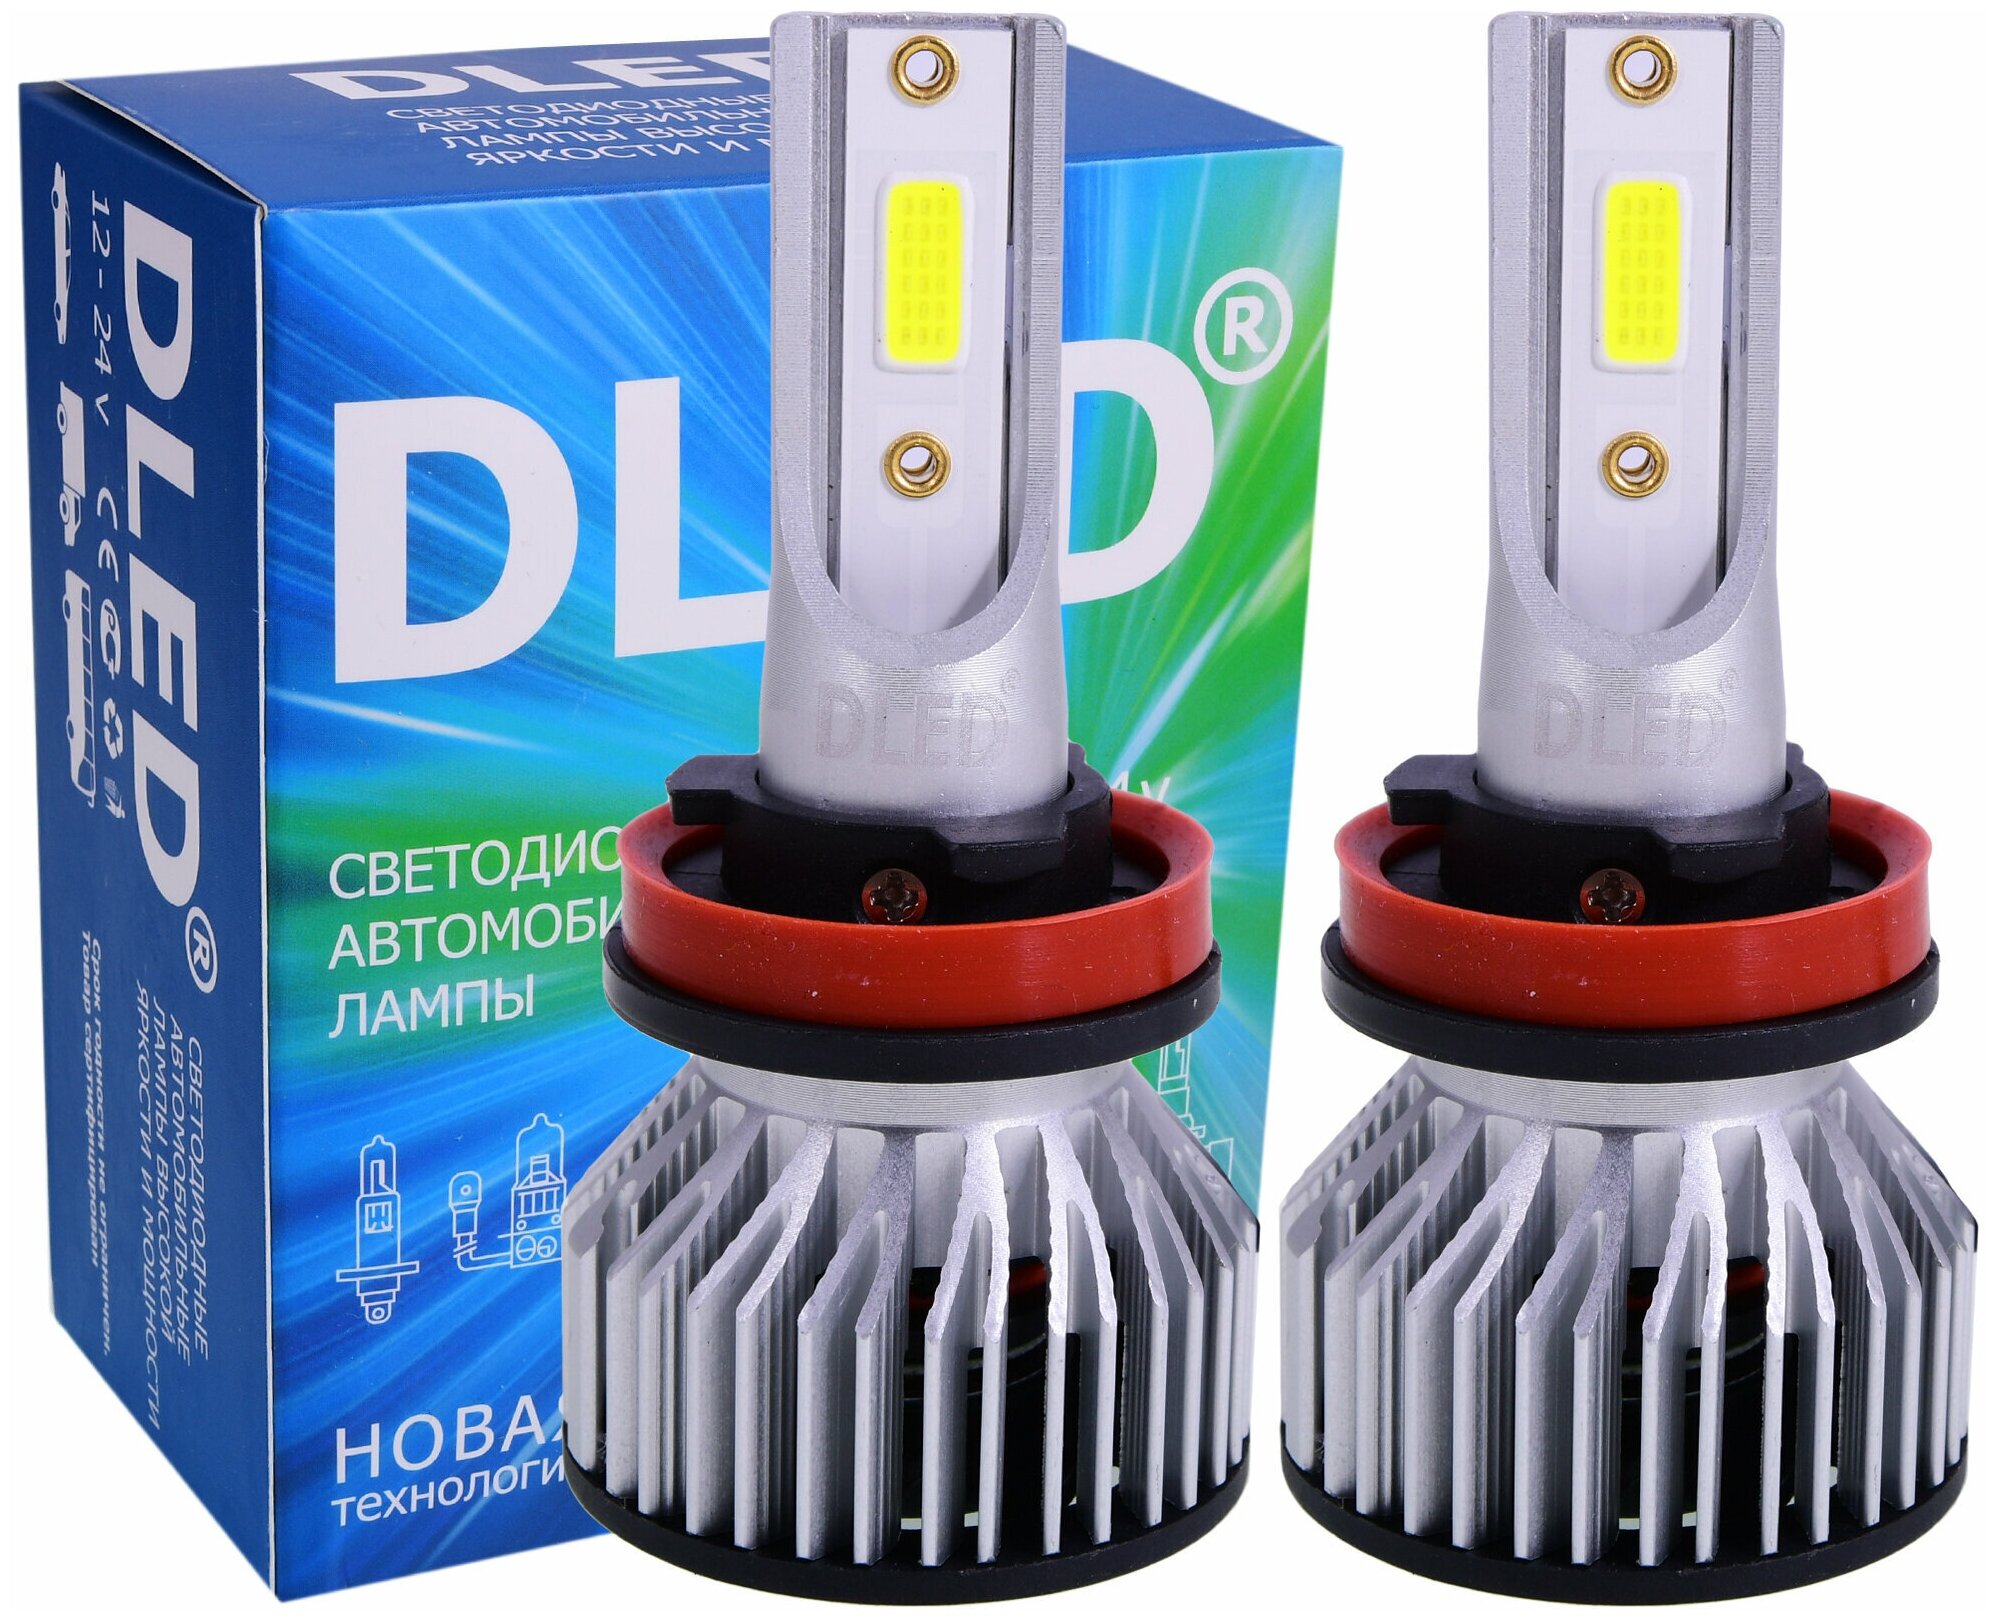 Автомобильные светодиодные лампы H8 Для ближнего свет /дальнего света / Для противотуманных фар Серия BEAM Бренд DLED (2 лампы)